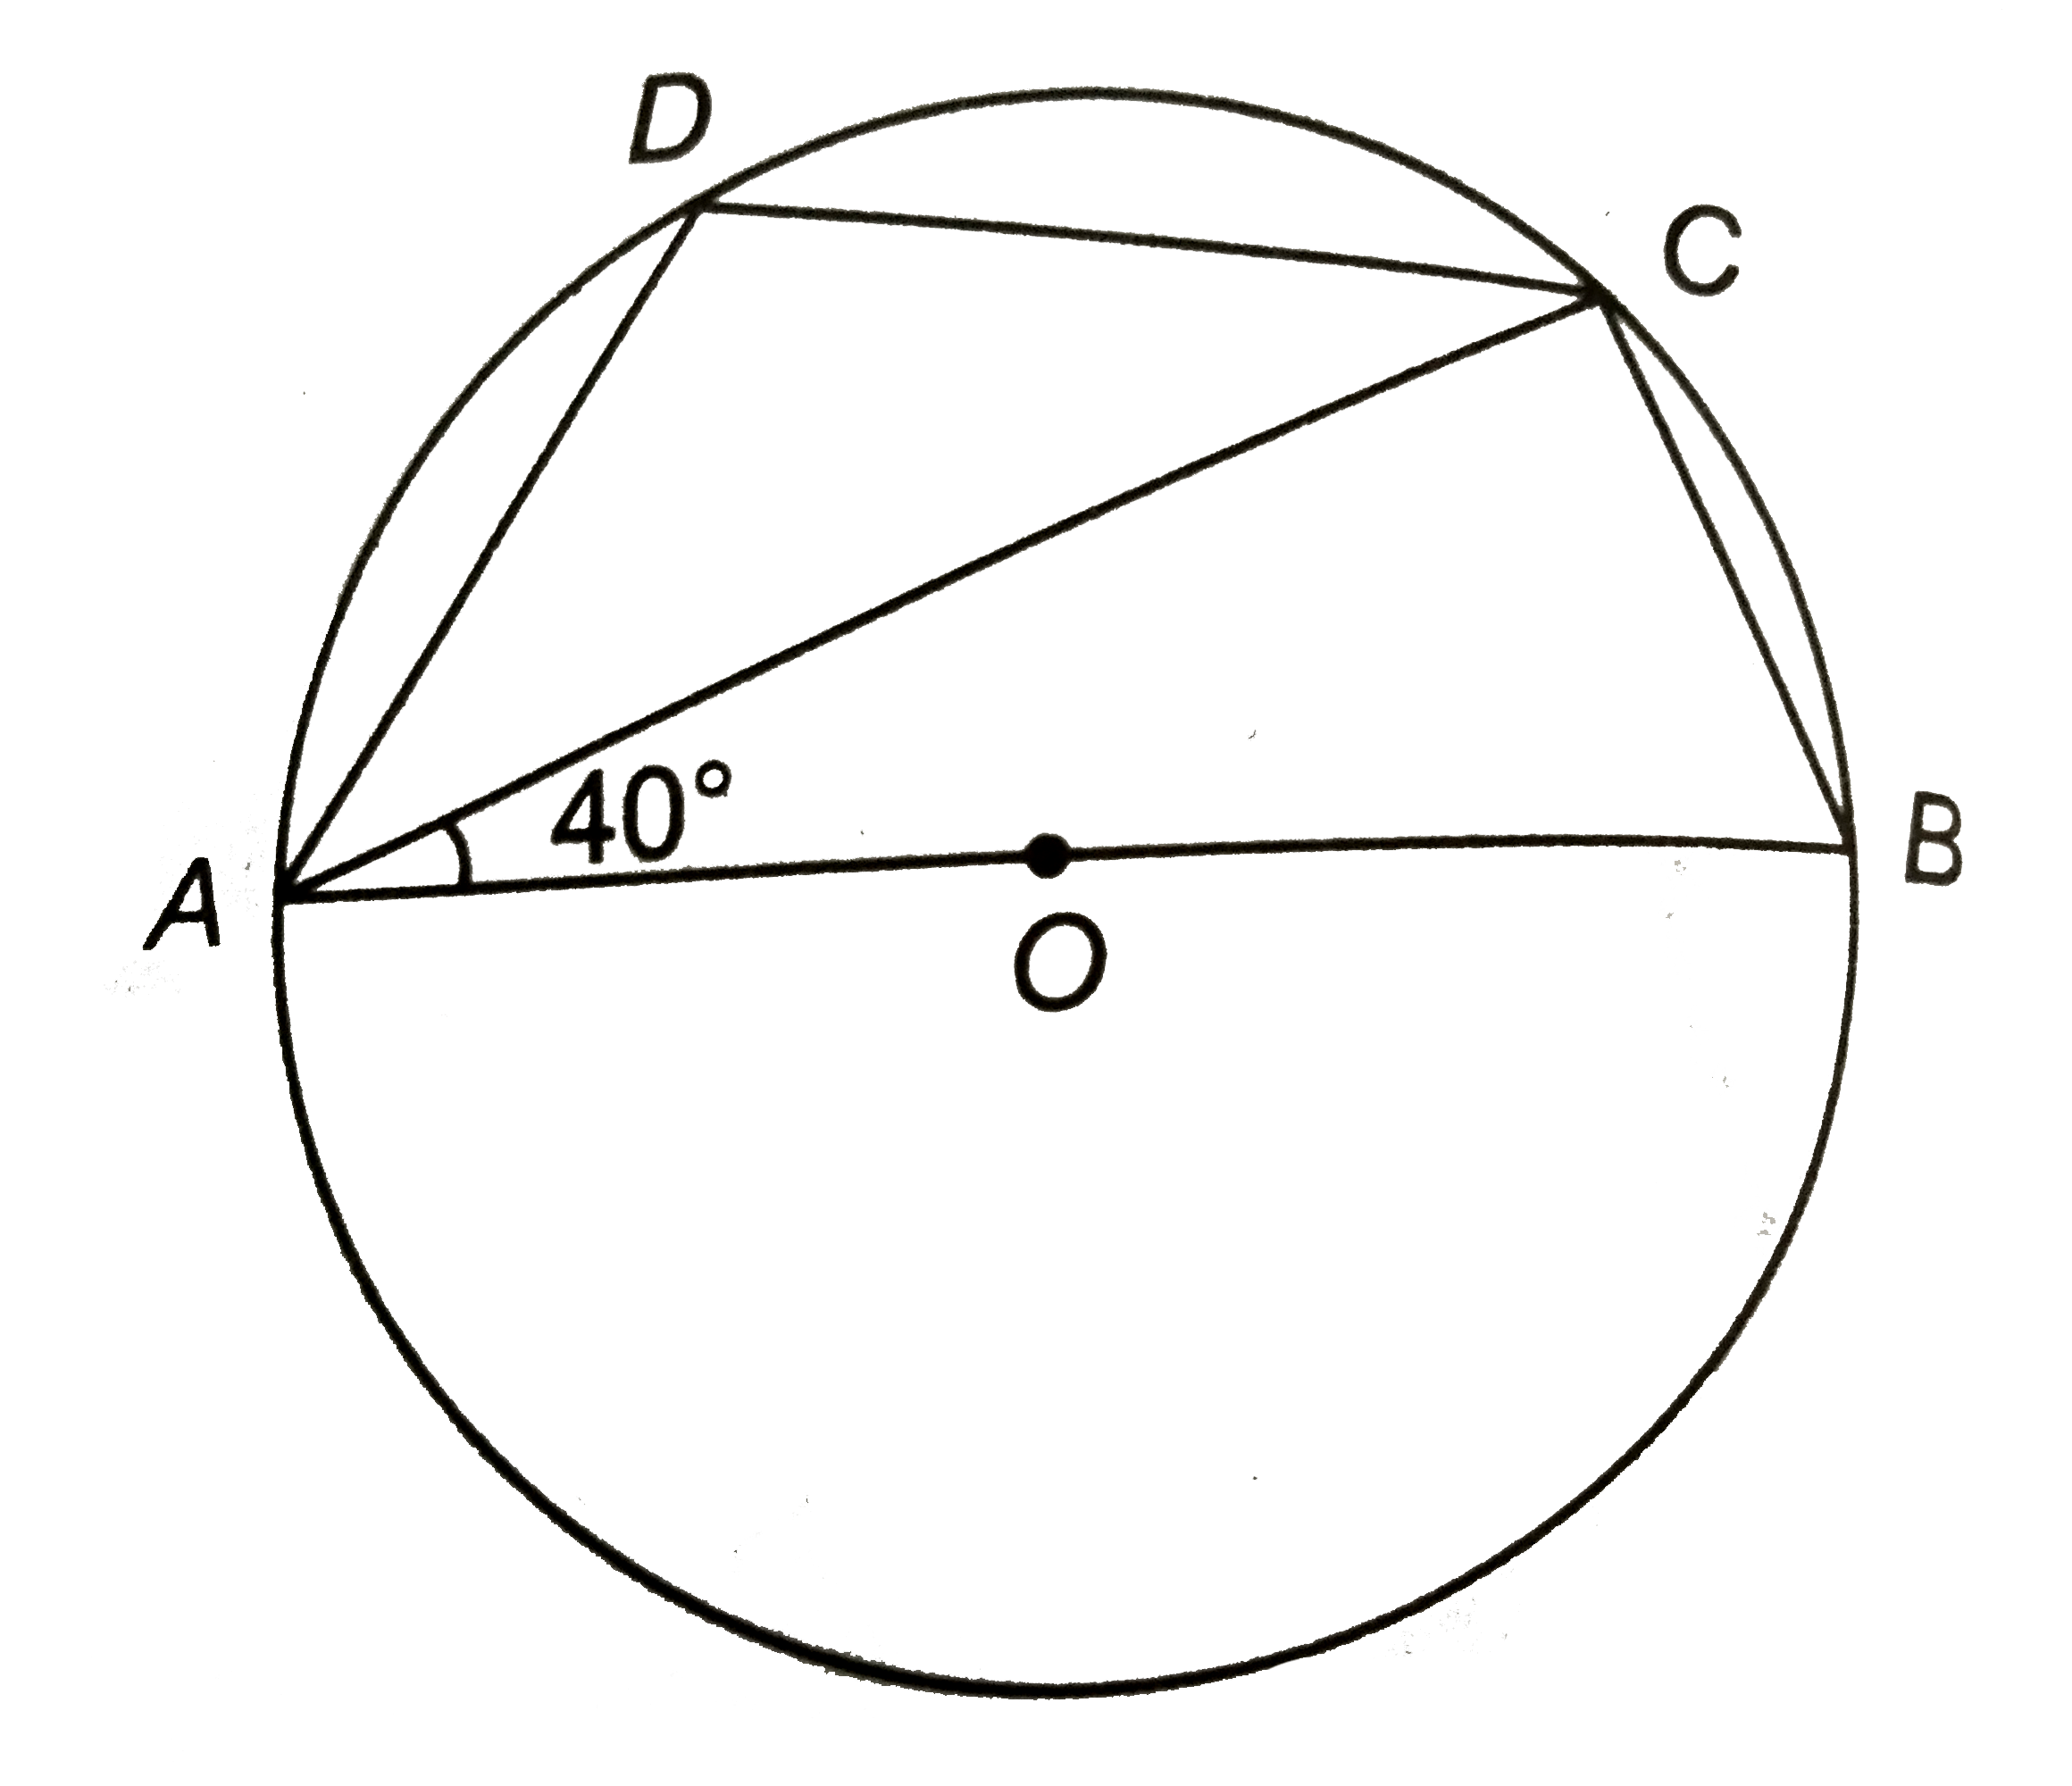 संलग्न चित्र में, O वृत्त का केन्द्र है | यदि angleBAC=40^(@), तो angleADC का मान ज्ञात कीजिए |